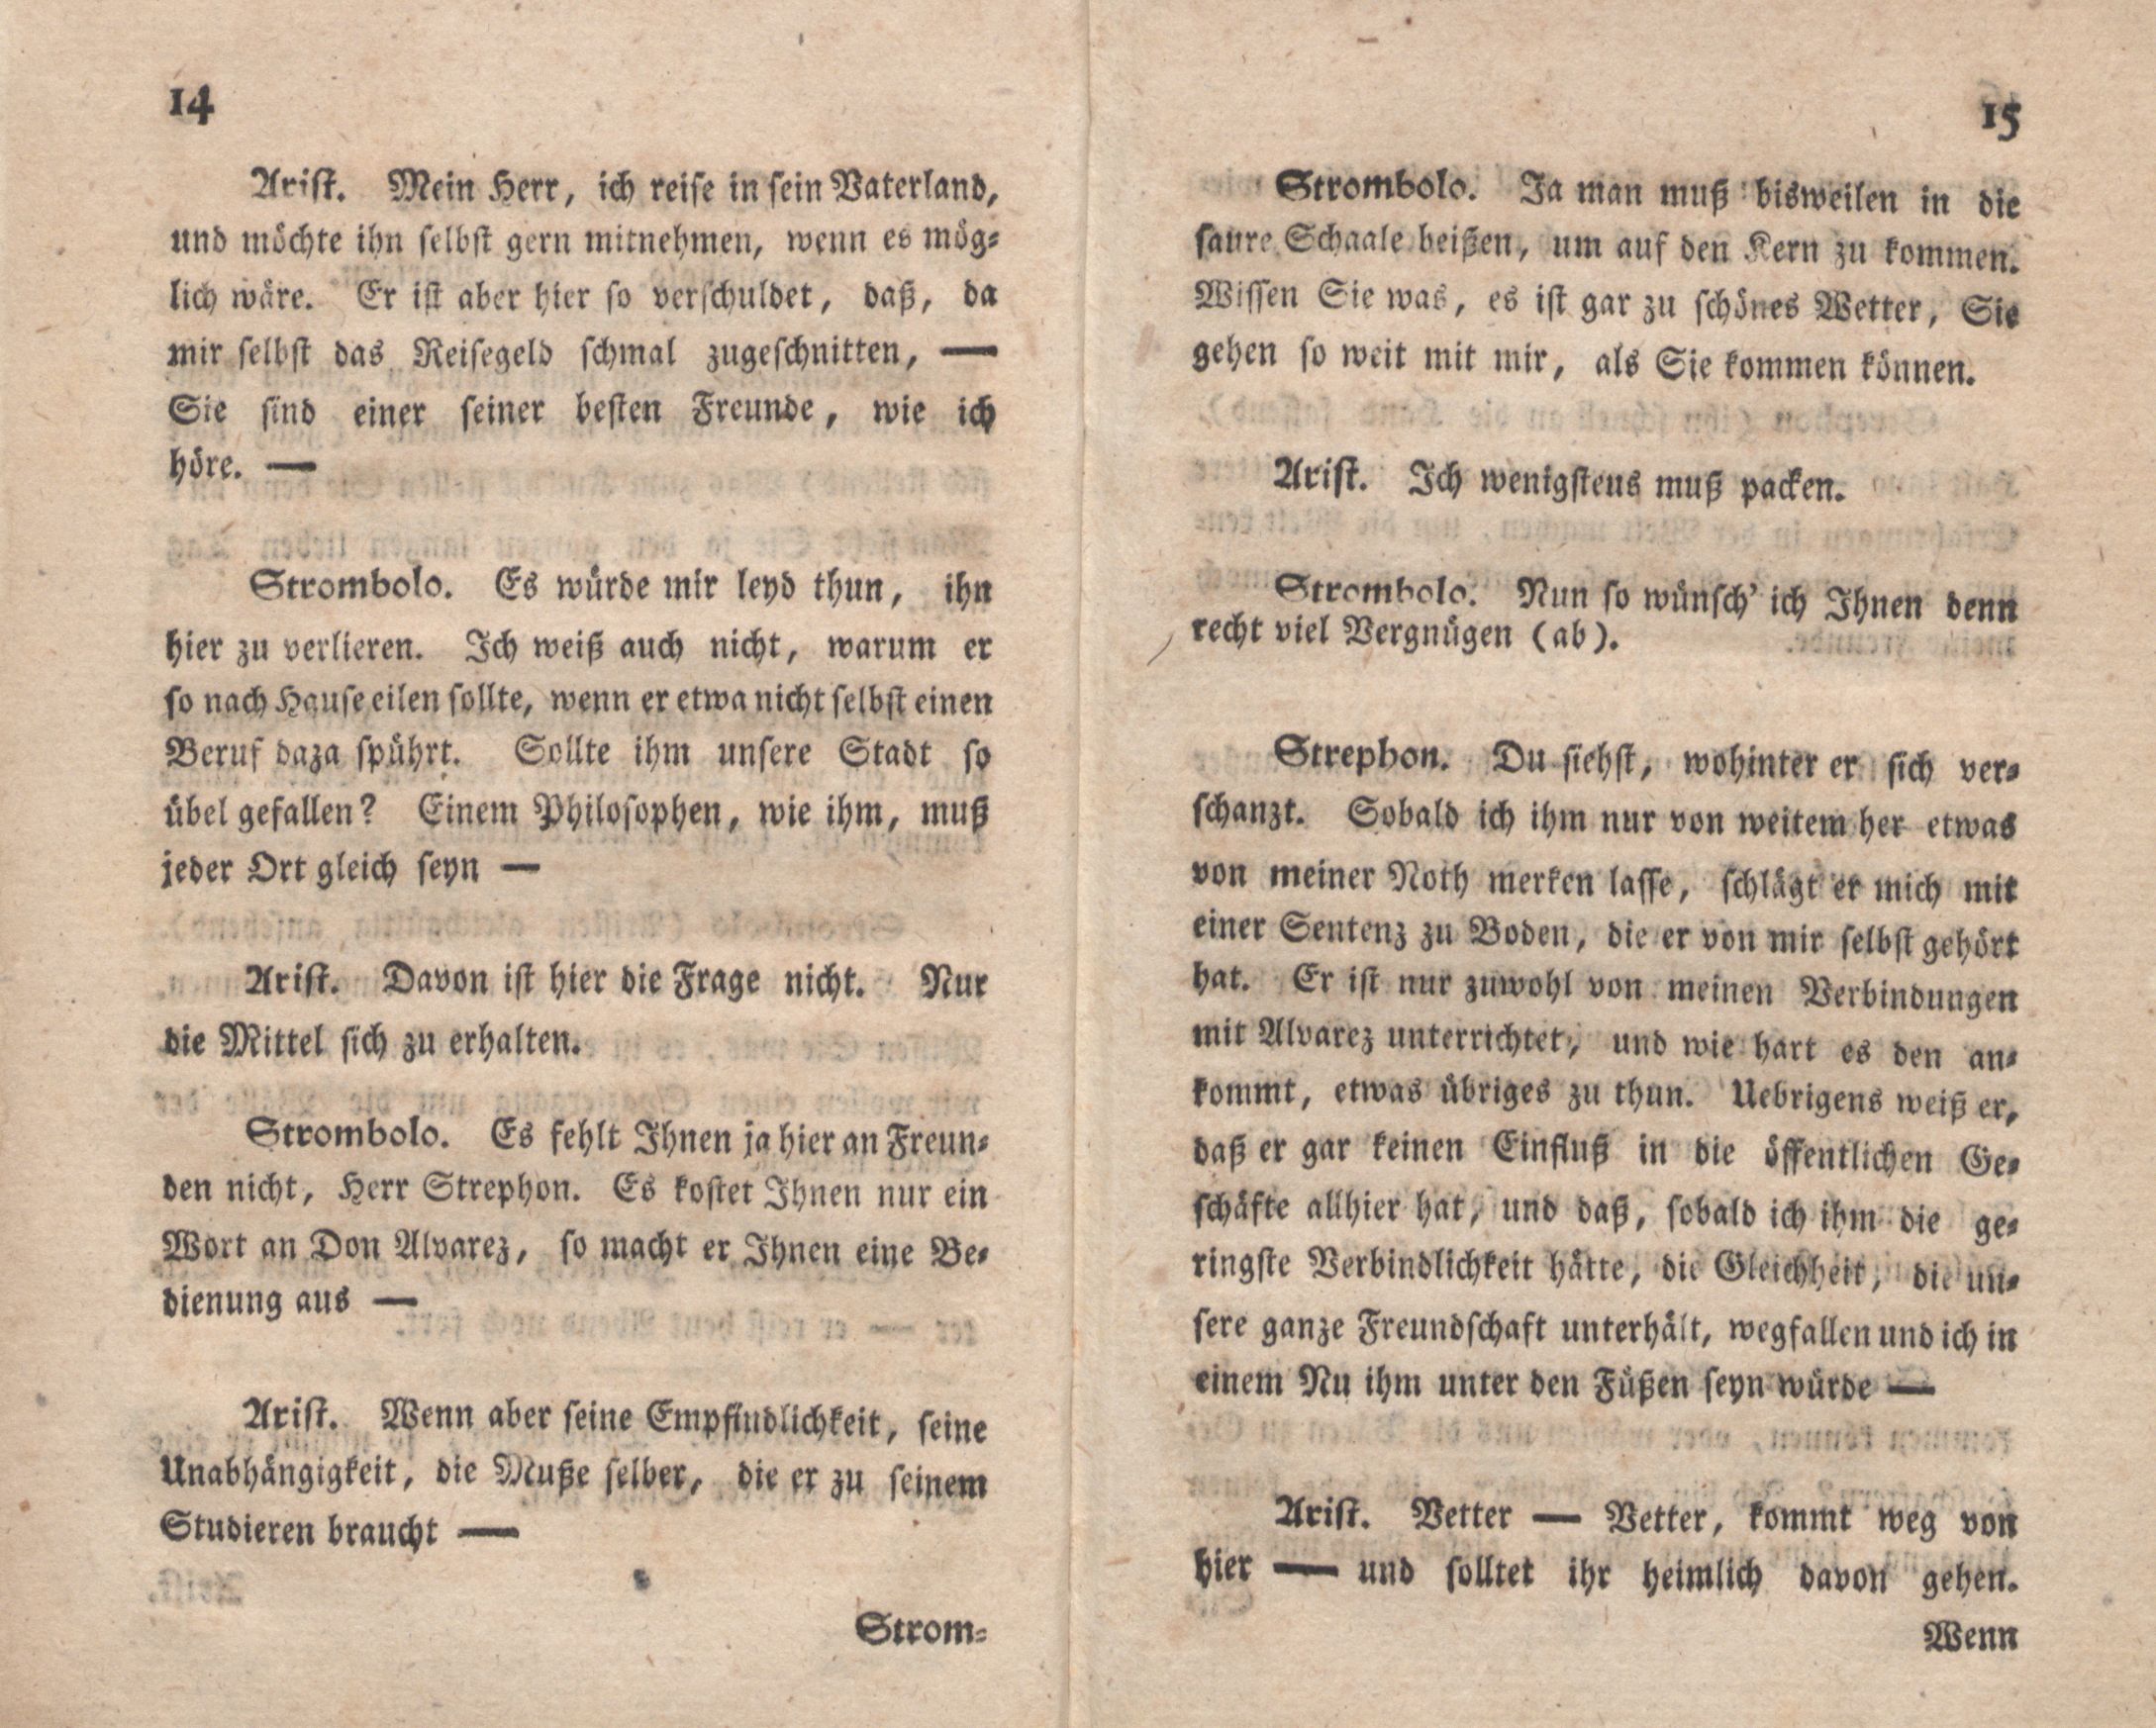 Die Freunde machen den Philosophen (1776) | 9. (14-15) Main body of text